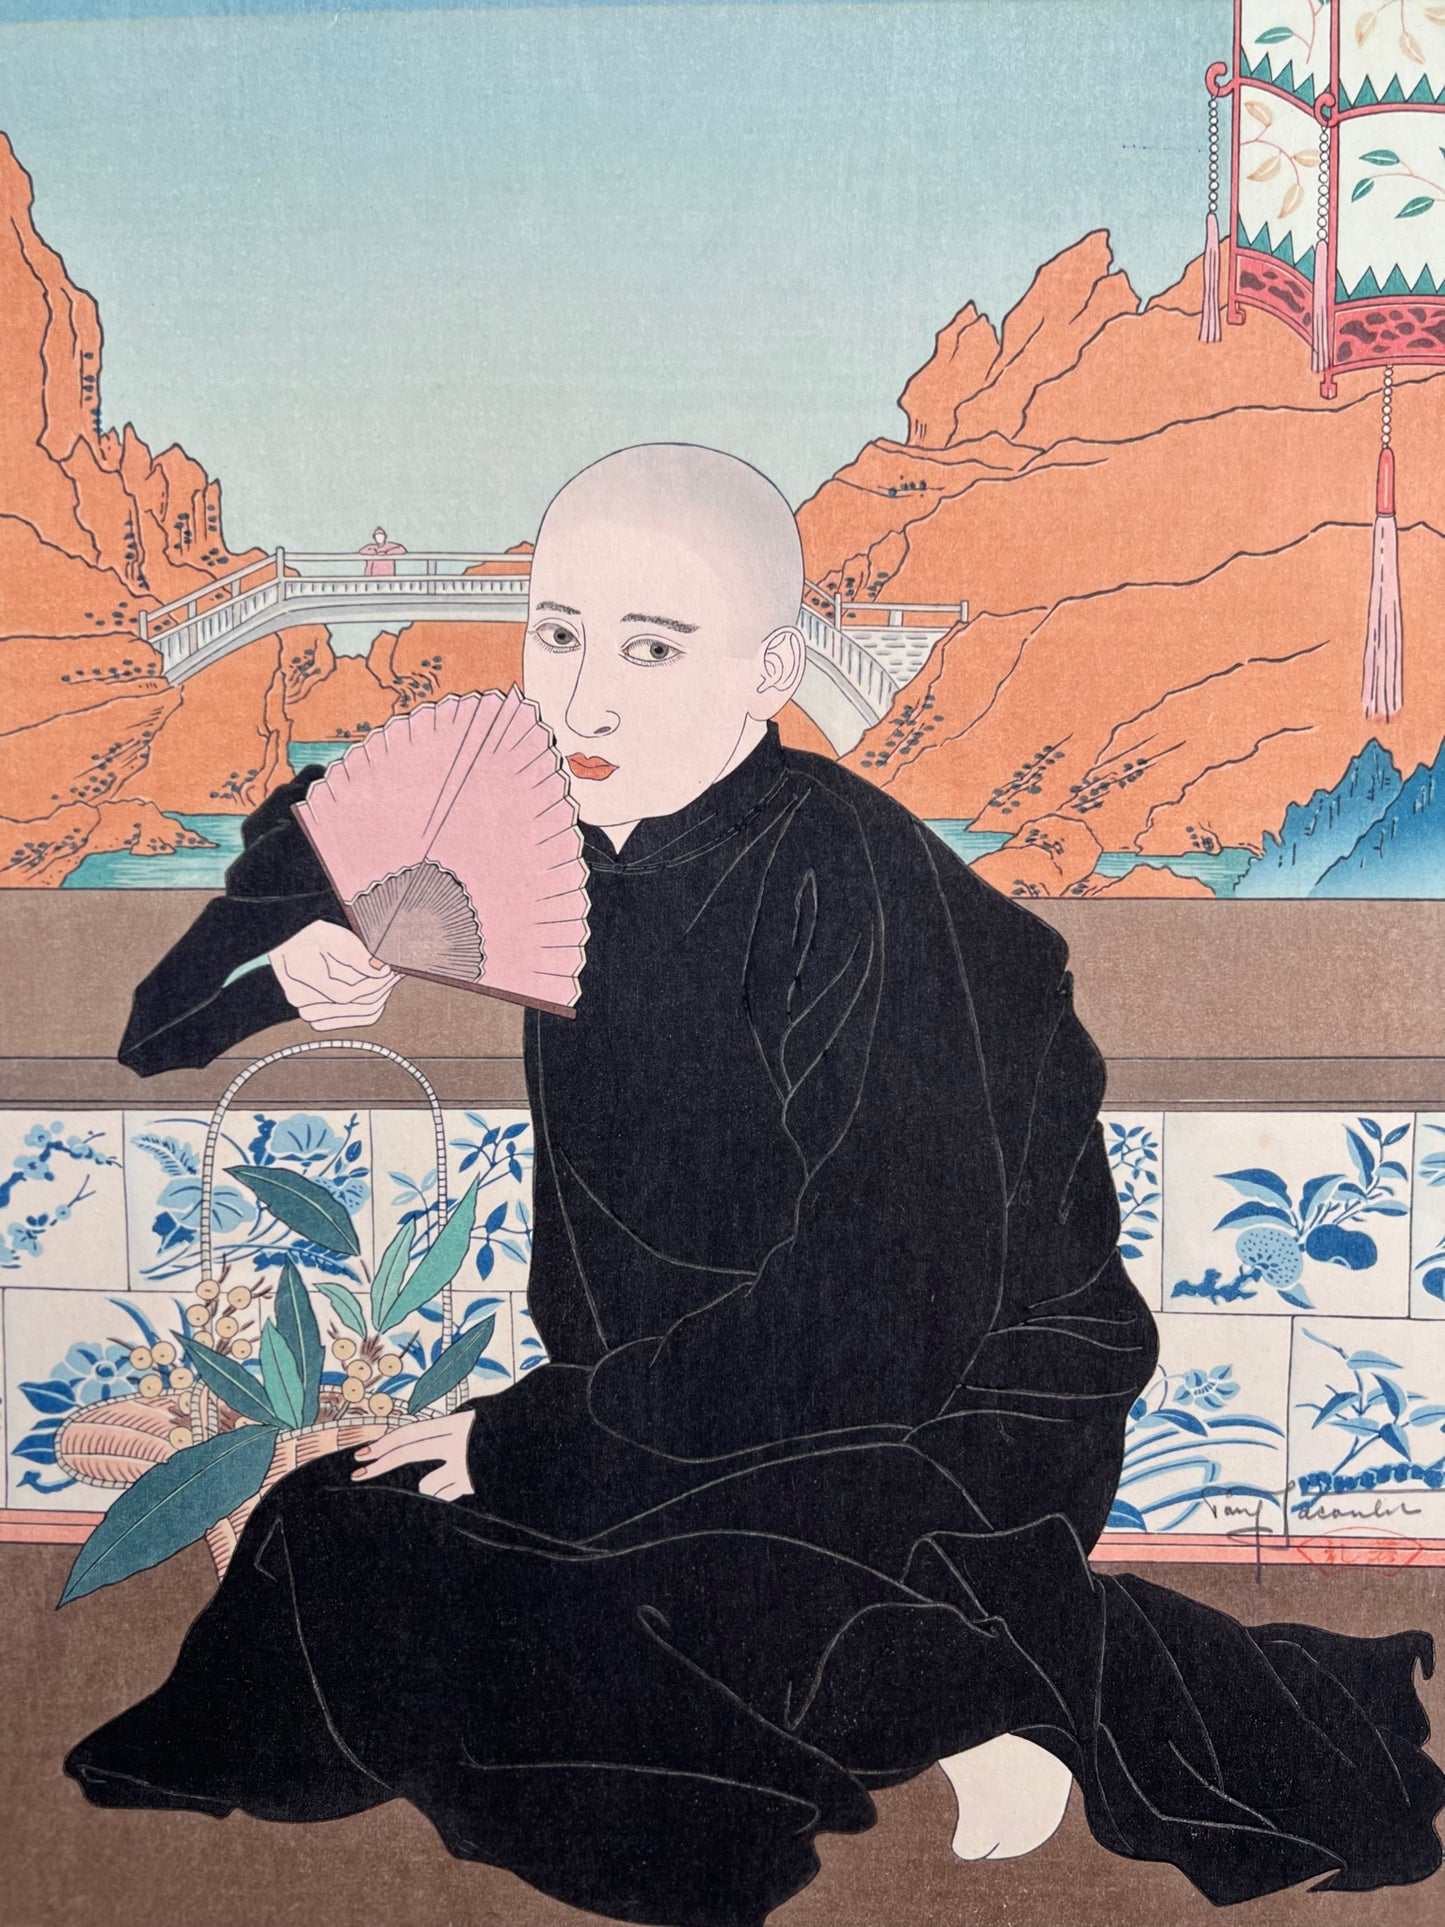 estampe japonaise homme en kimono noir assis , tenant un éventail, en arriere plan un pont japonais